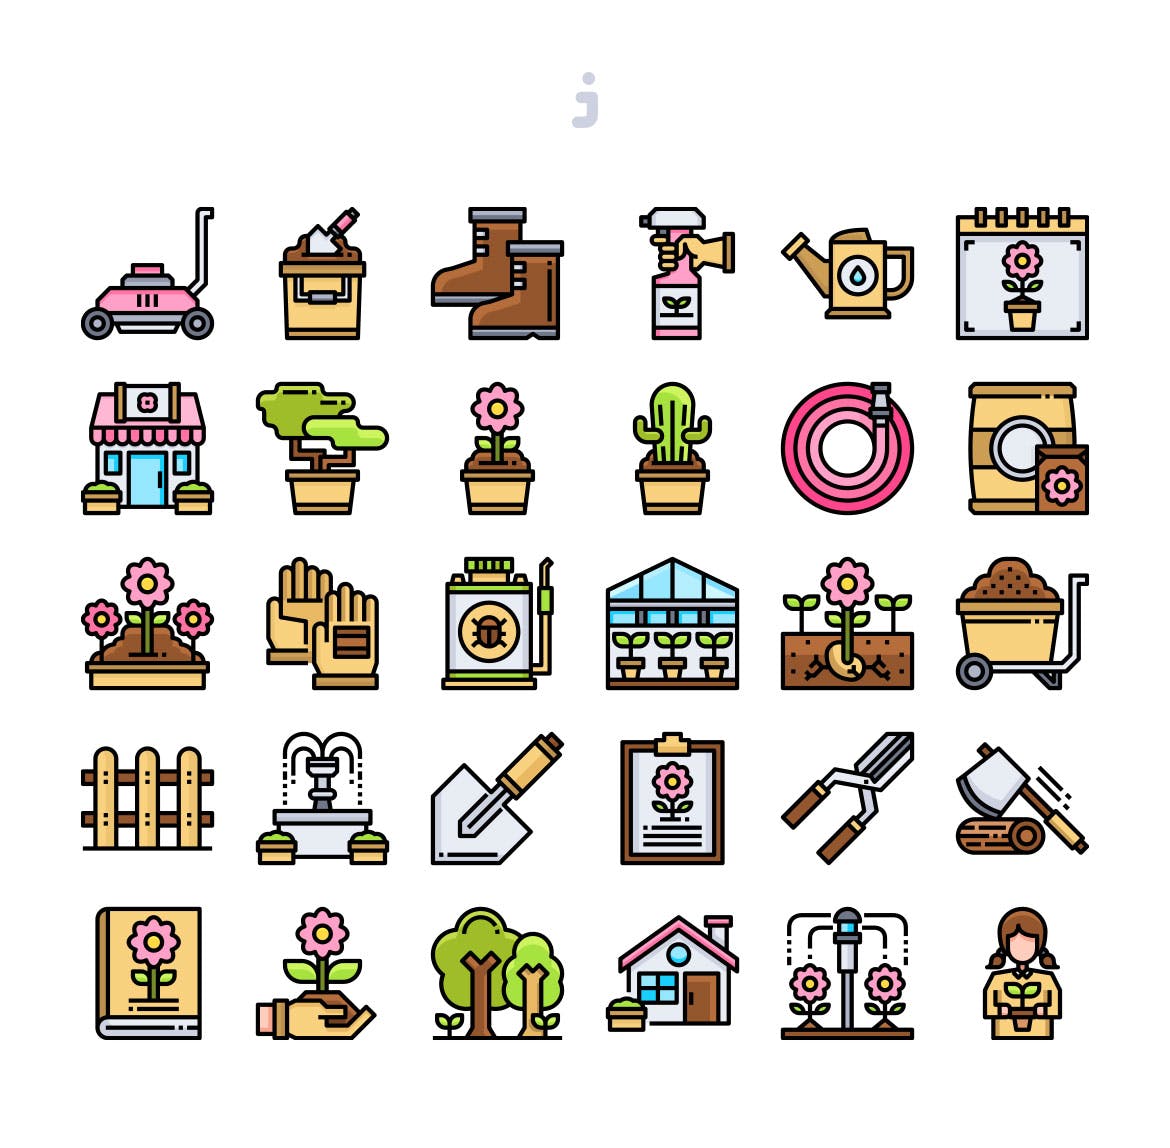 30枚园艺花园主题彩色矢量图标素材 30 Gardening Icons插图(1)